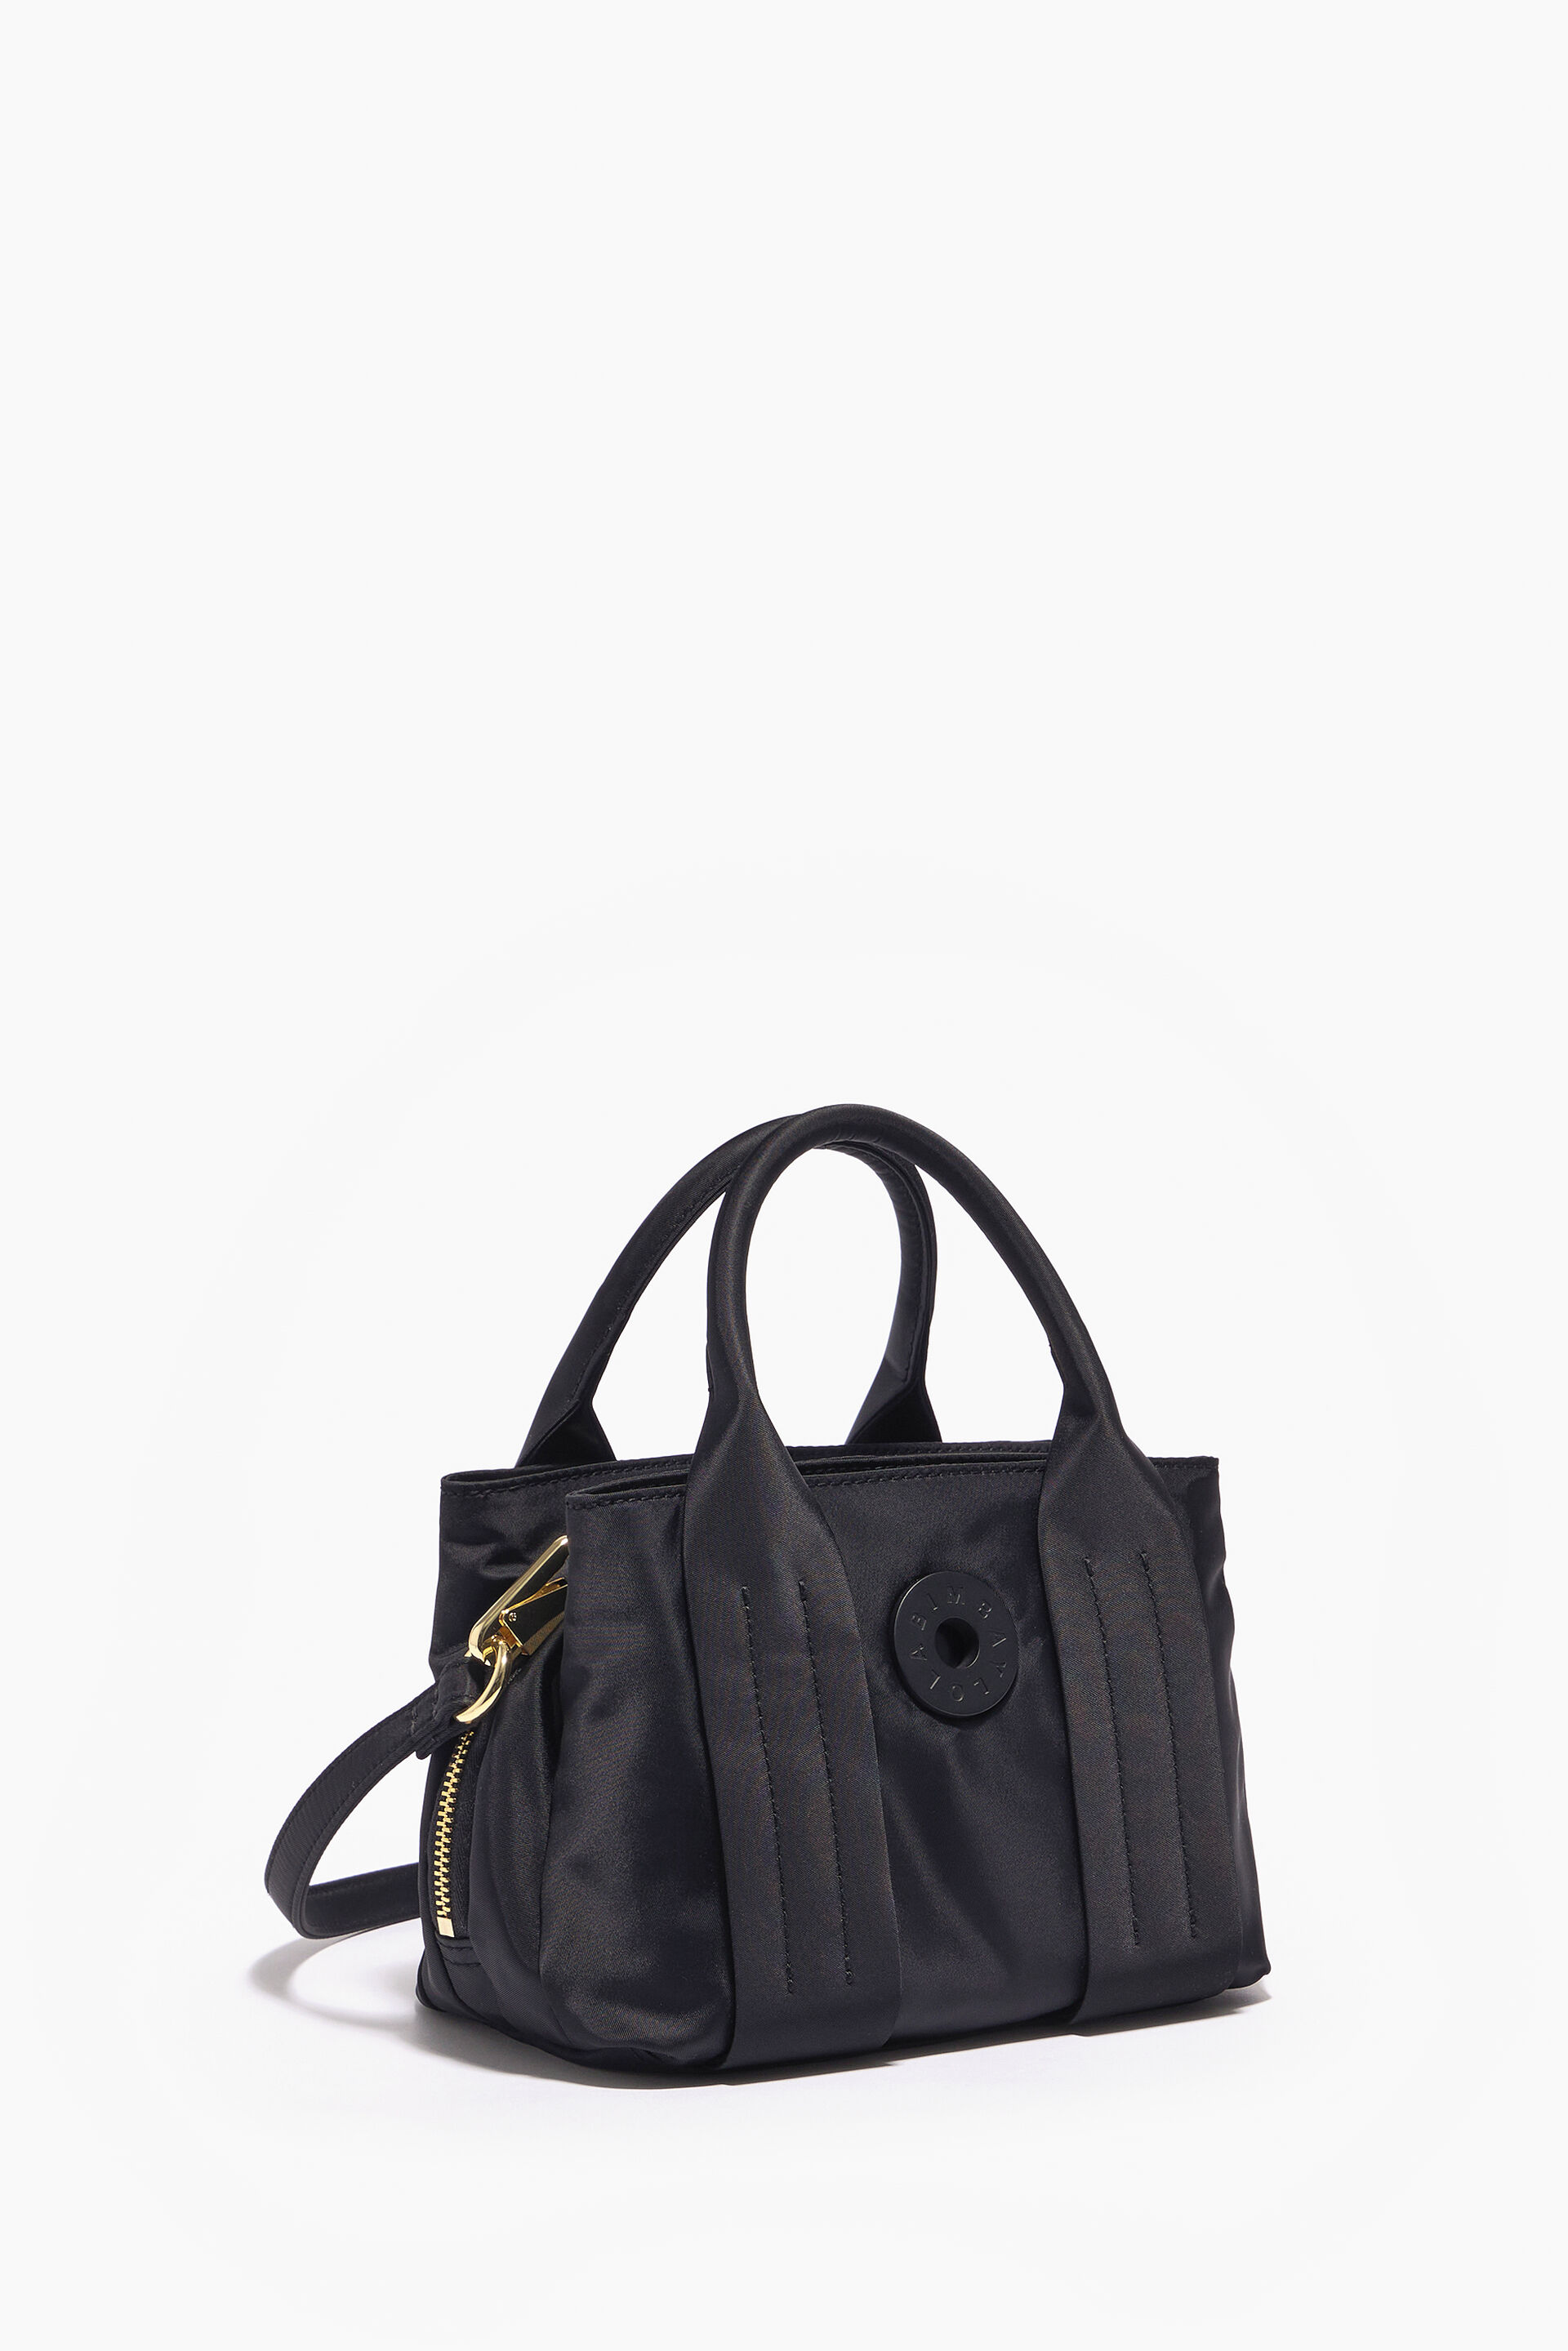 XS black tote bag